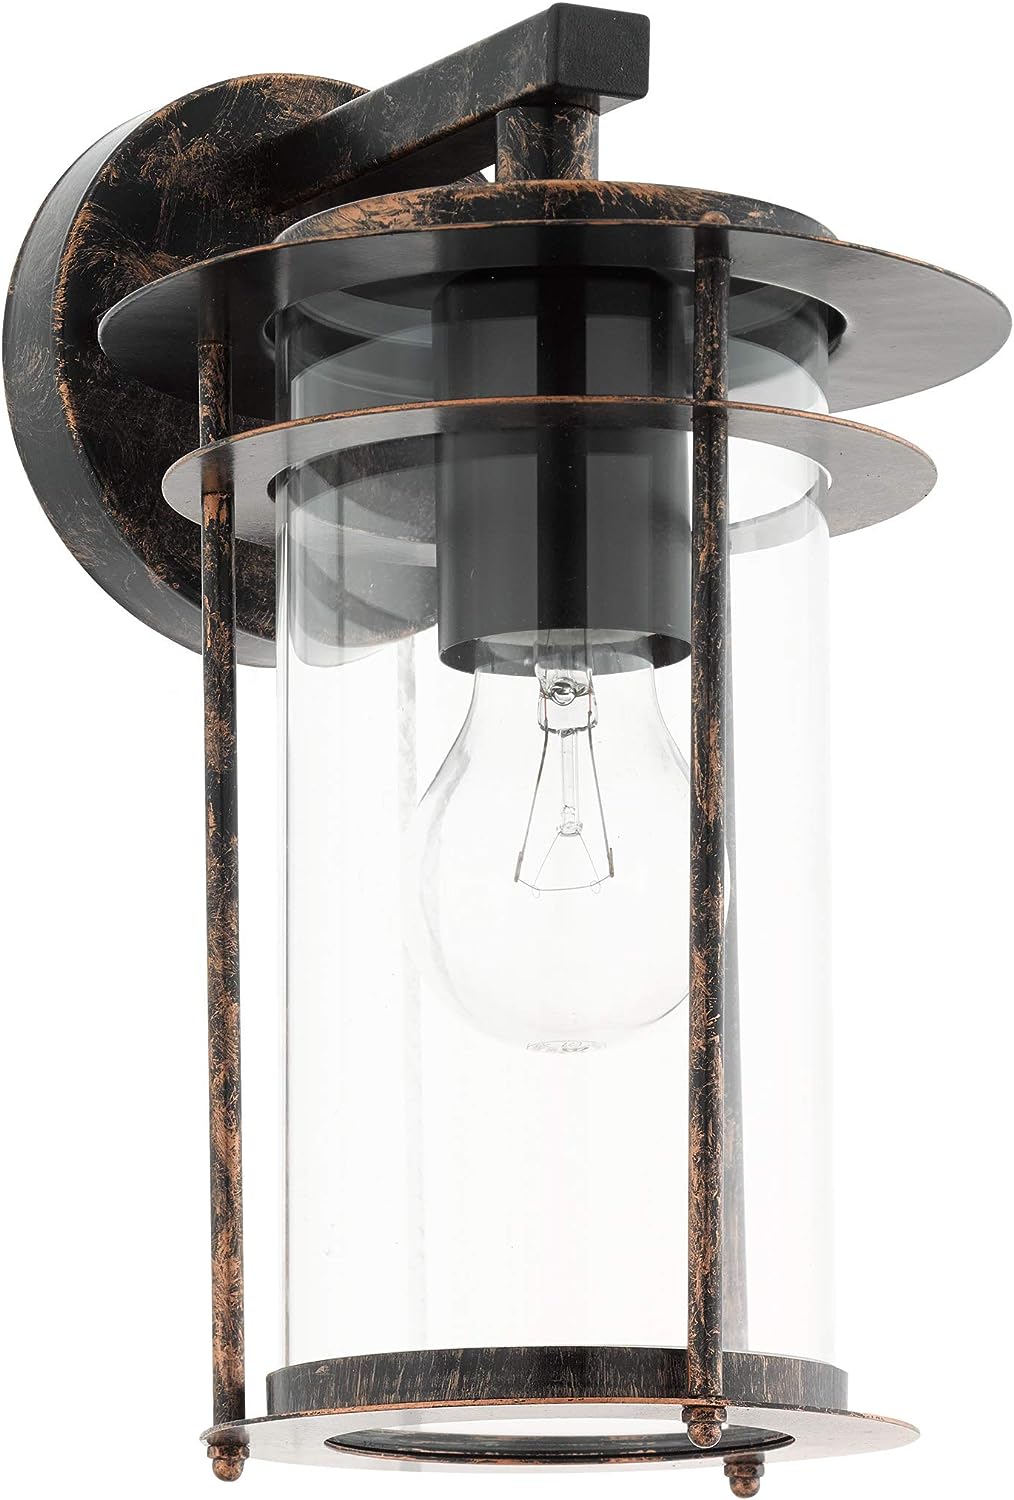 EGLO Außen-Wandlampe Valdeo, 1 flammige Außenleuchte, Wandleuchte aus verzinktem Stahl, Farbe: Kupferfarben-antik, Glas: klar, Fassung: E27, IP44